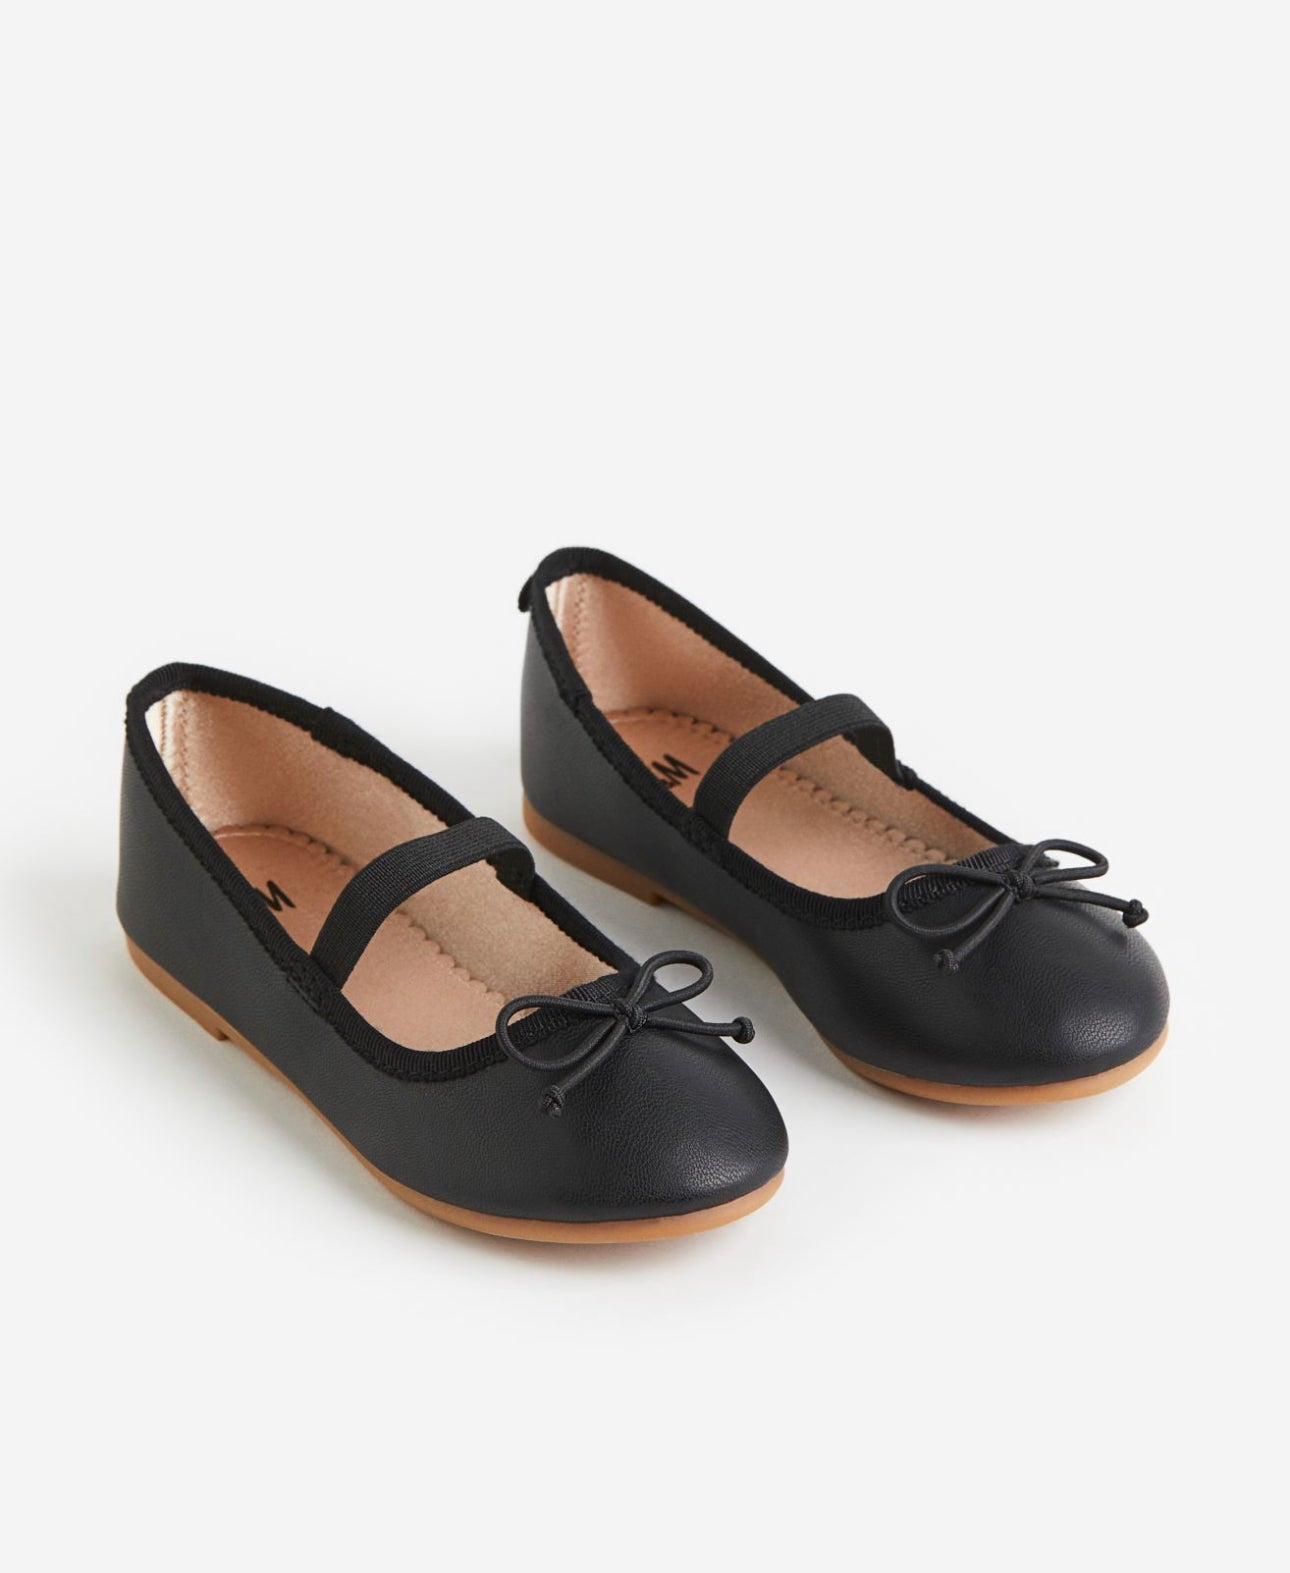 Zapatillas negras H&M niña suela café zapatos negros escolar